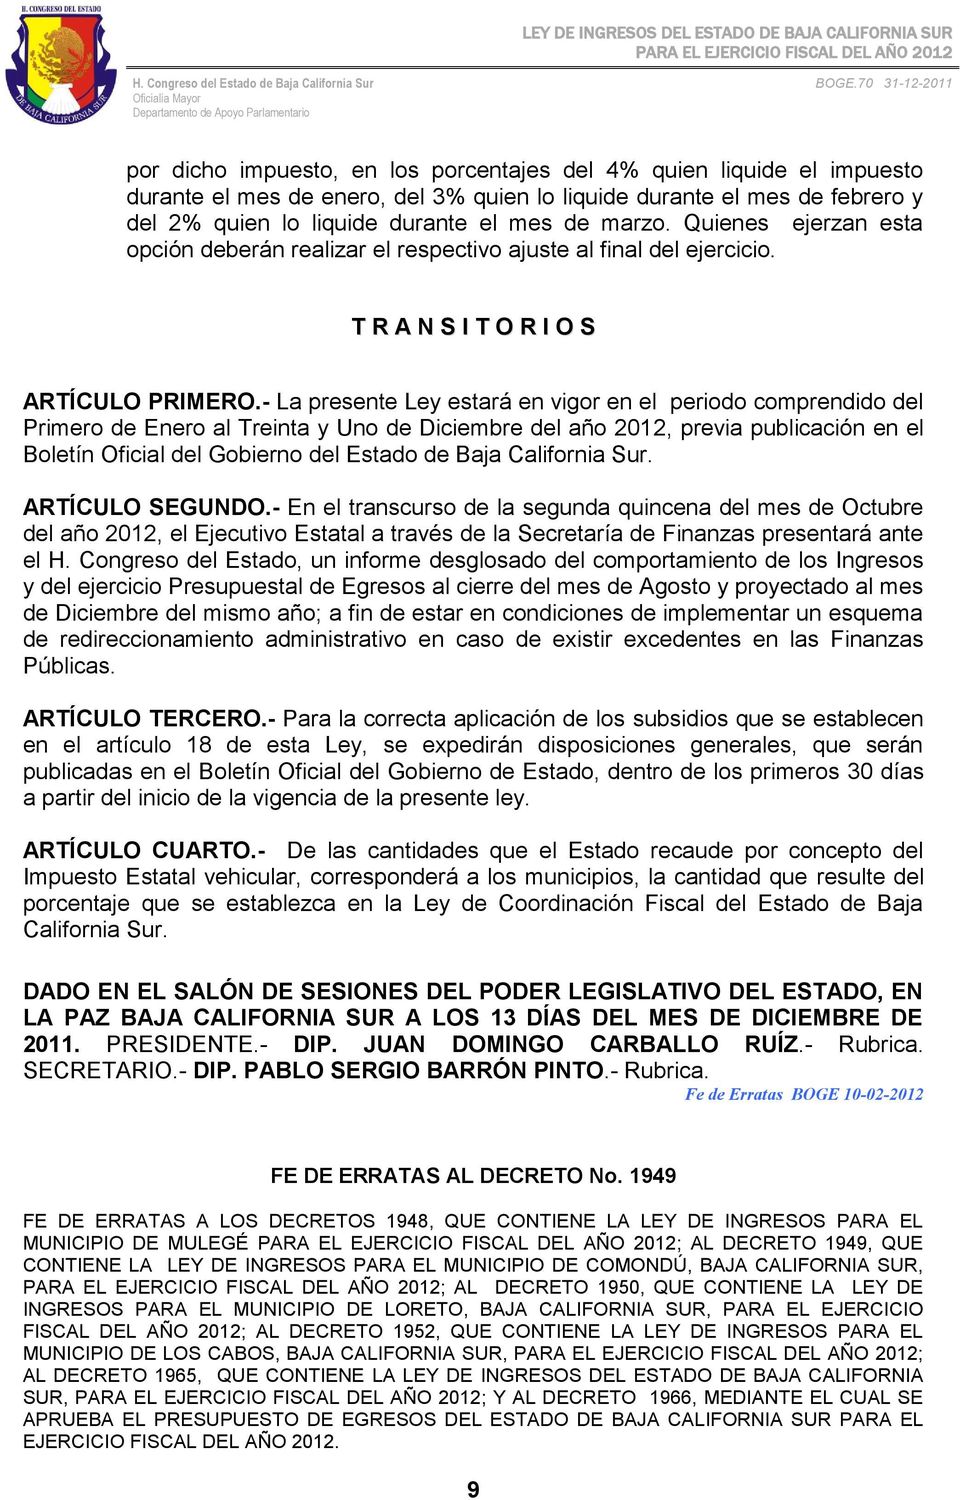 - La presente Ley estará en vigor en el periodo comprendido del Primero de Enero al Treinta y Uno de Diciembre del año 2012, previa publicación en el Boletín Oficial del Gobierno del Estado de Baja